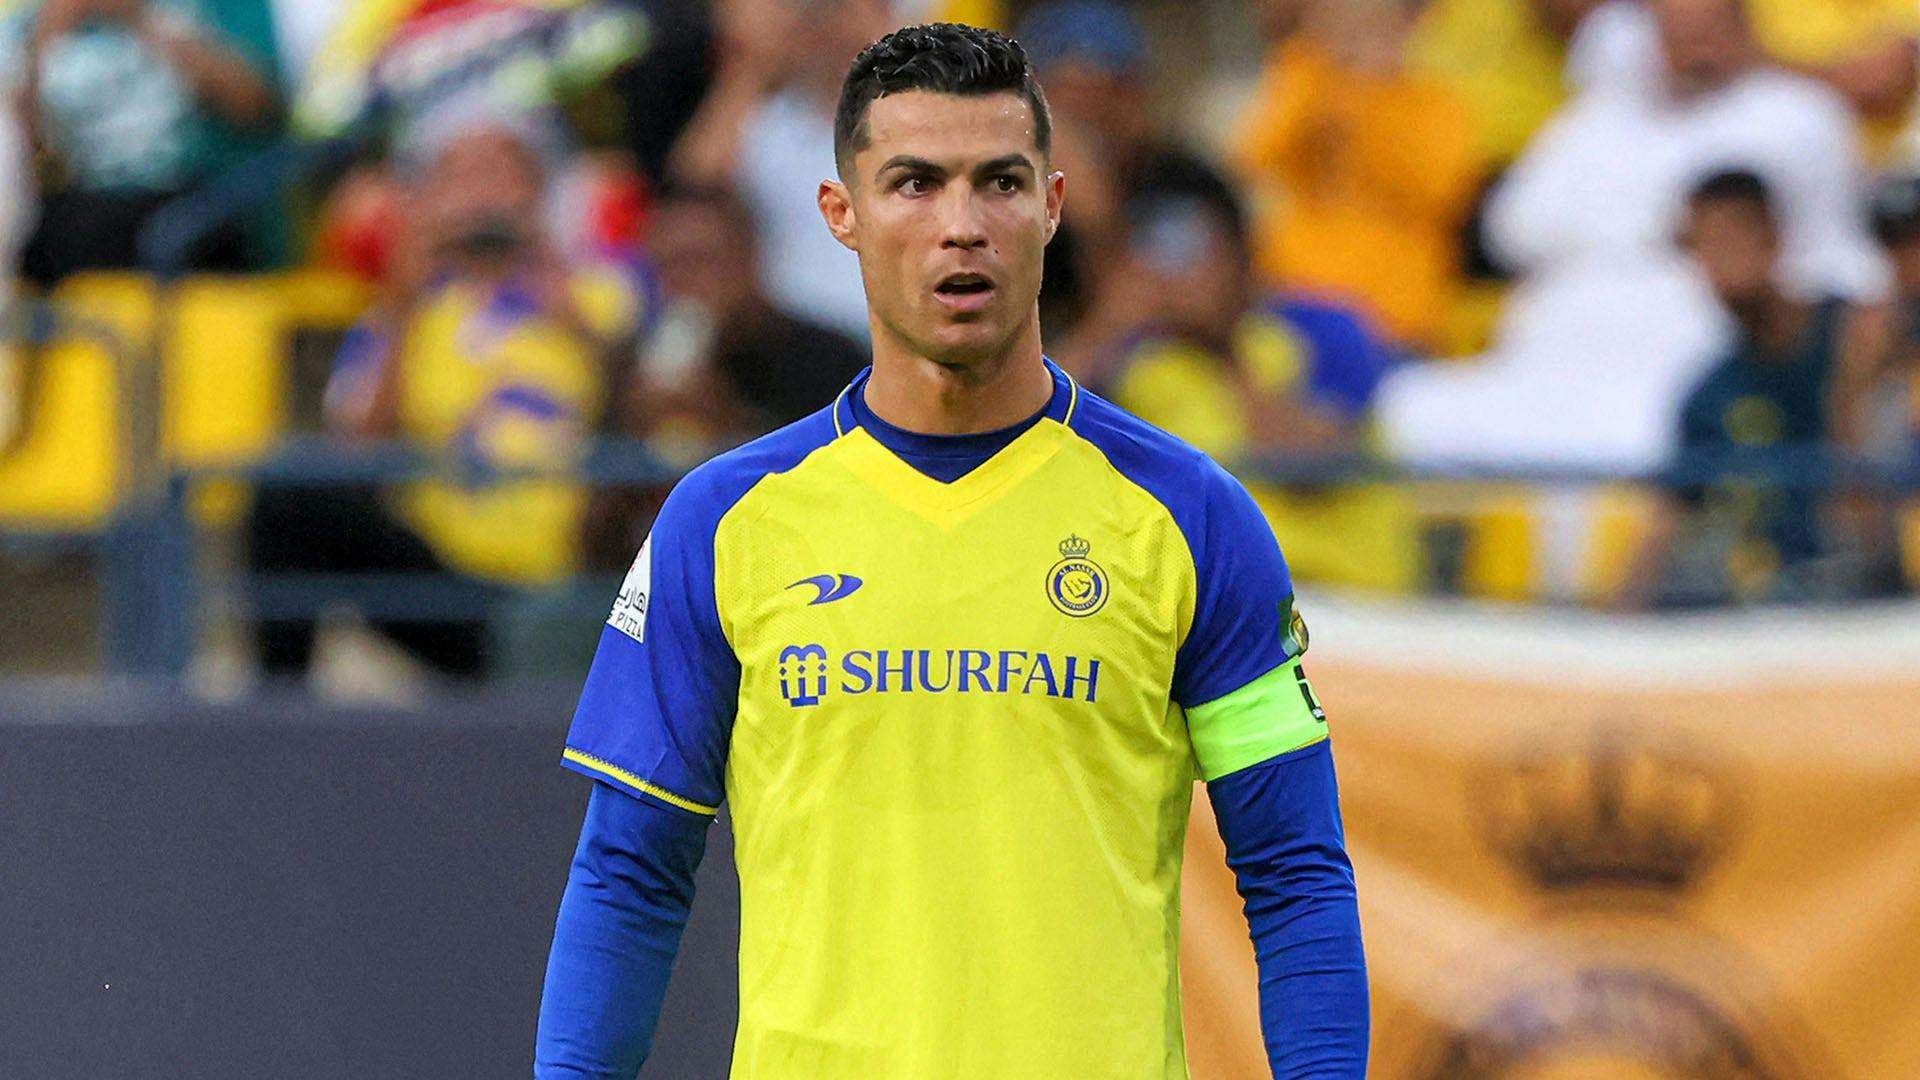 L'esultanza di Cristiano Ronaldo scatena le polemiche: cos'ha fatto?